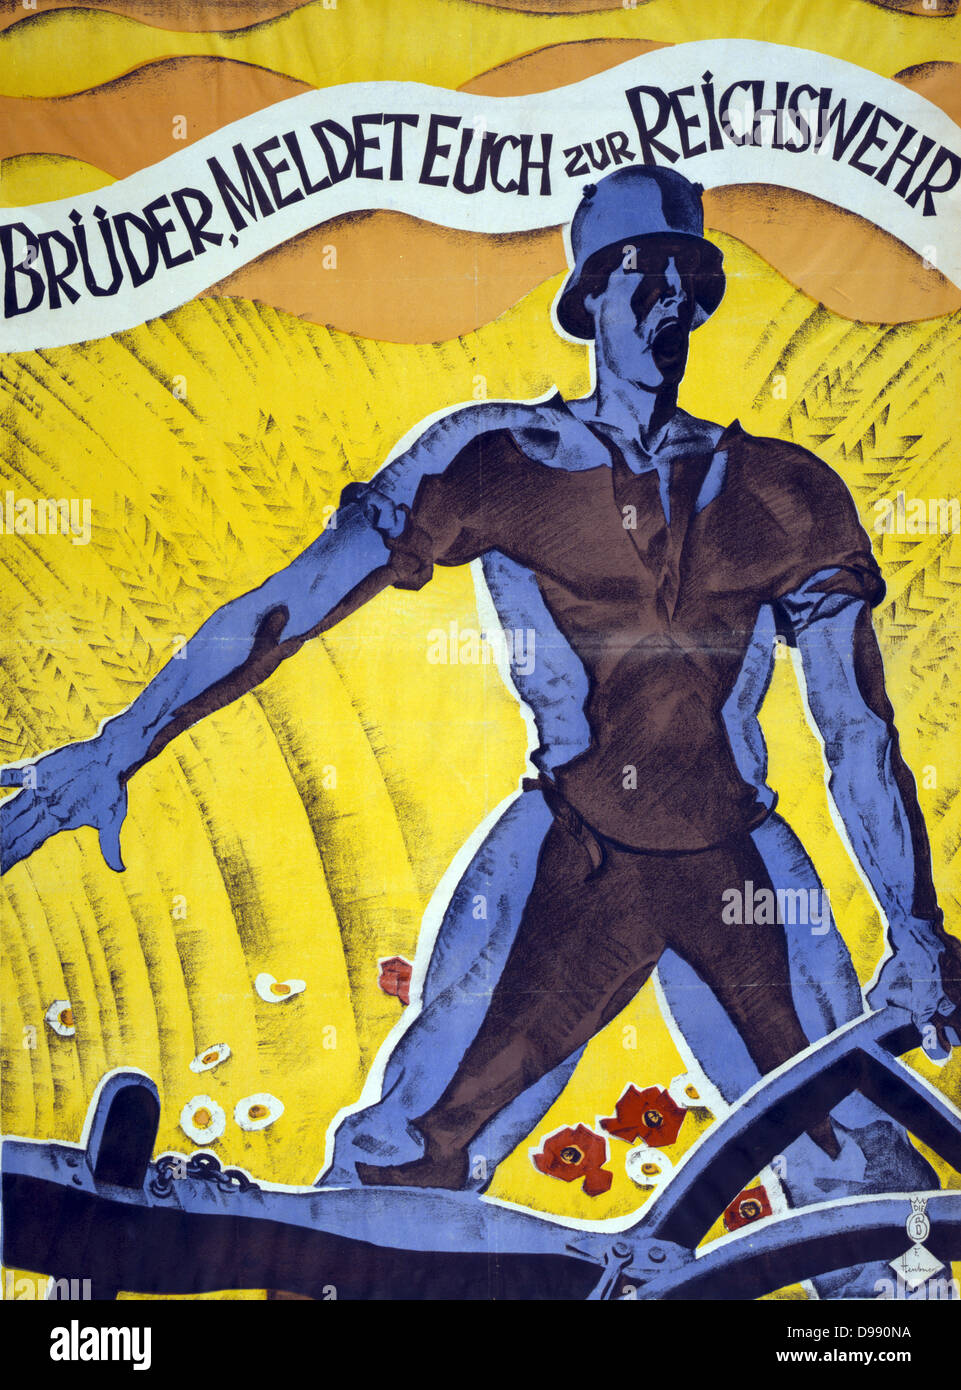 Brüder, in der Reichswehr" gewinnen. Deutsche Poster 1920. Mann in der Soldat Helm mit einem Pflug. Hinter ihm ist ein Feld von Weizen und Blumen. Reichswehr (Nationale Verteidigung) bestand von 1919-1935, als es der Wehrmacht wurde. Stockfoto